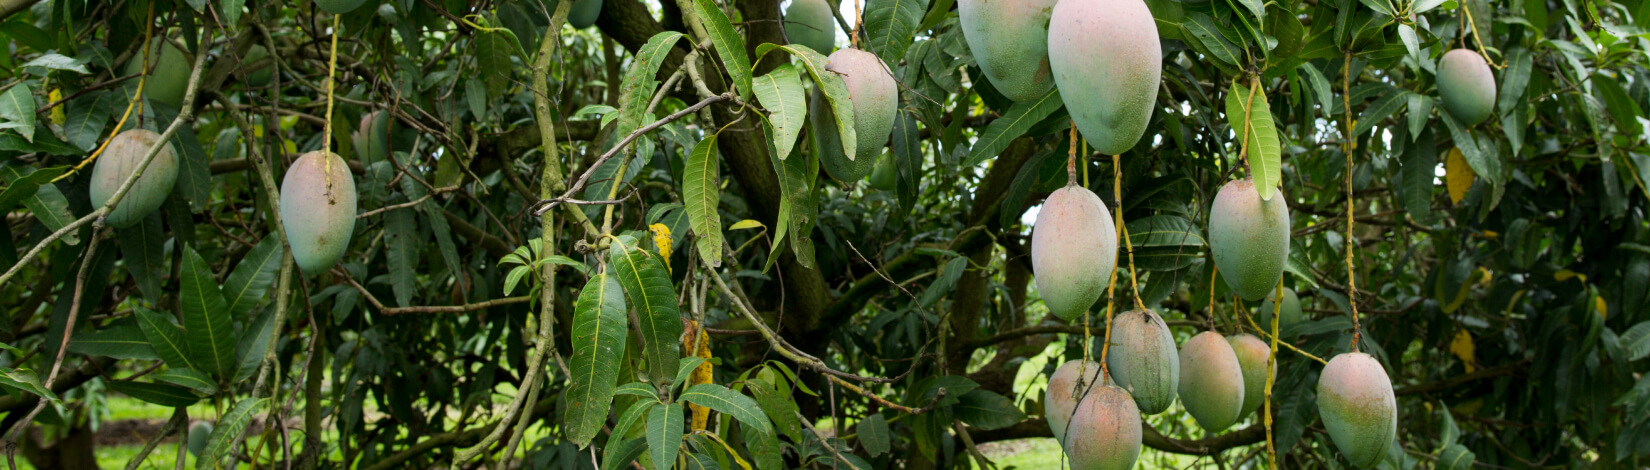 Mangoes on trees